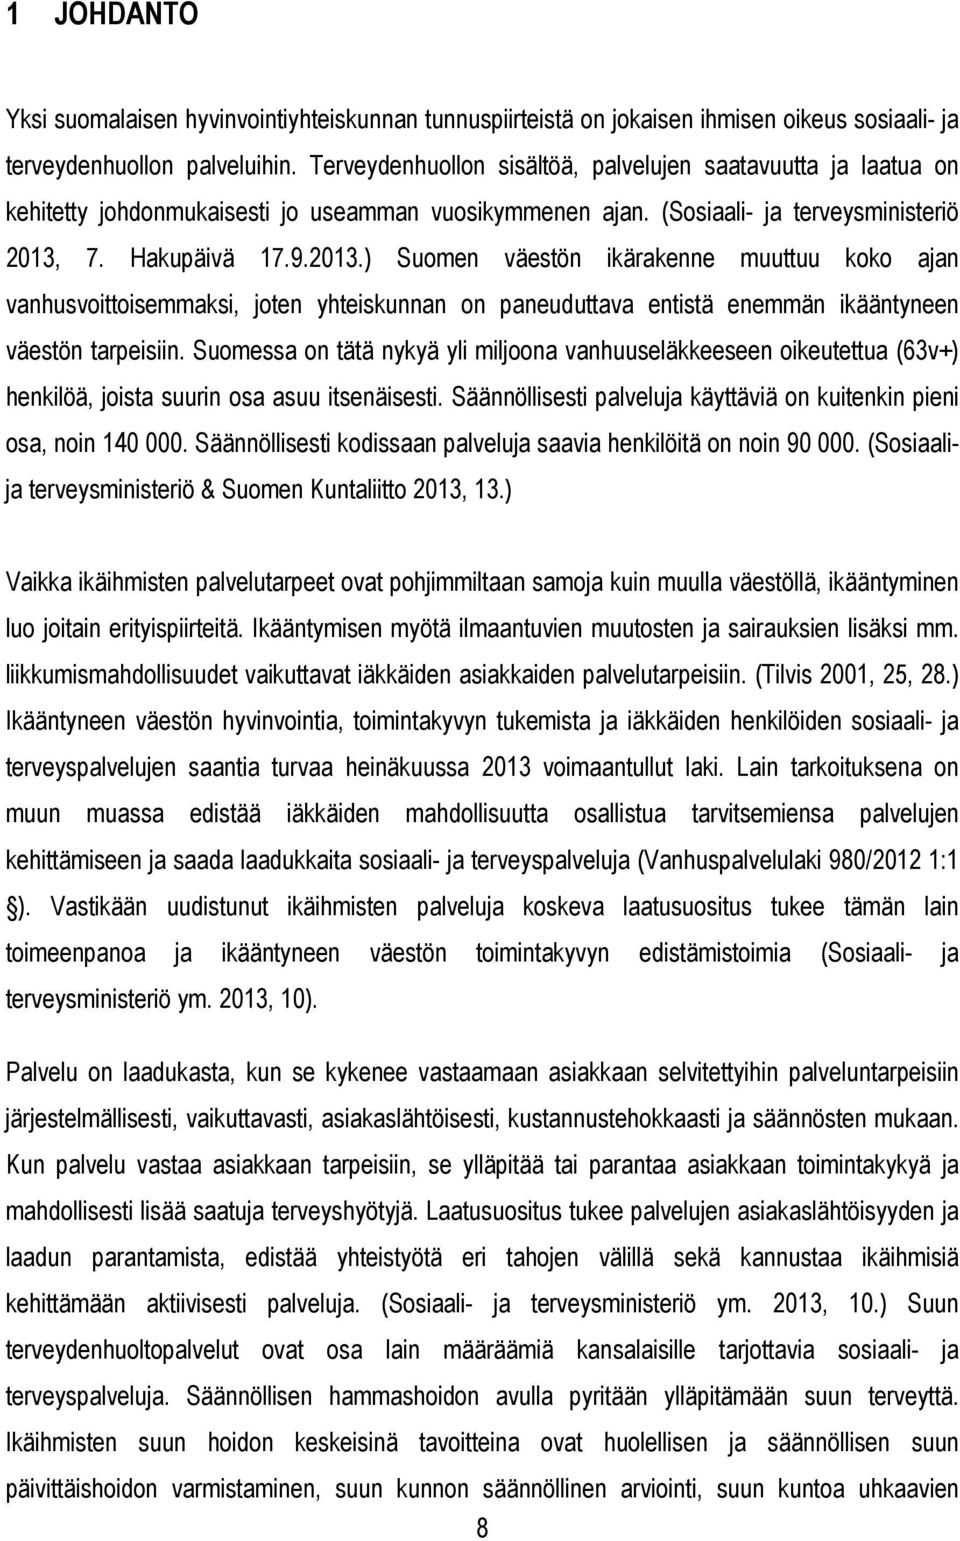 7. Hakupäivä 17.9.2013.) Suomen väestön ikärakenne muuttuu koko ajan vanhusvoittoisemmaksi, joten yhteiskunnan on paneuduttava entistä enemmän ikääntyneen väestön tarpeisiin.